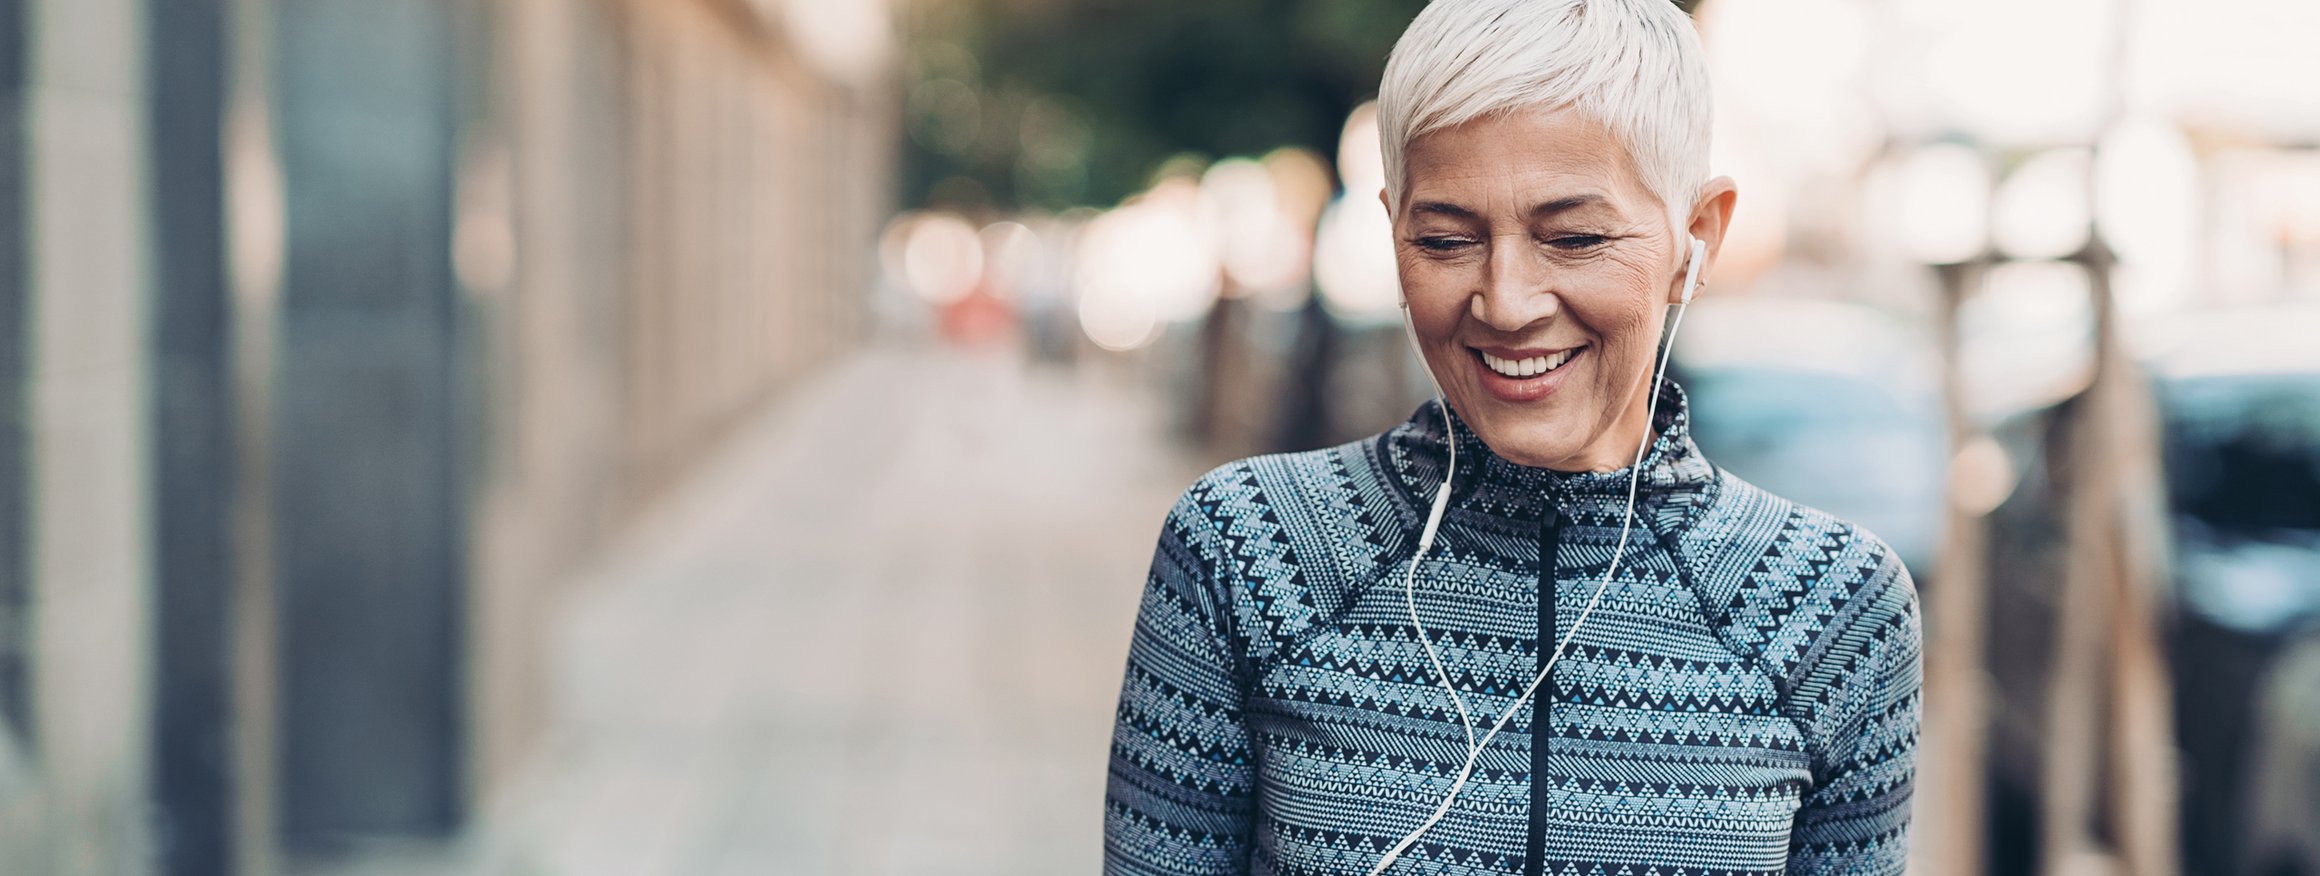 Eine ältere Frau mit grauen kurzen Haaren, läuft in Sportkleidung  und In-Ears lächelnd durch eine Straße